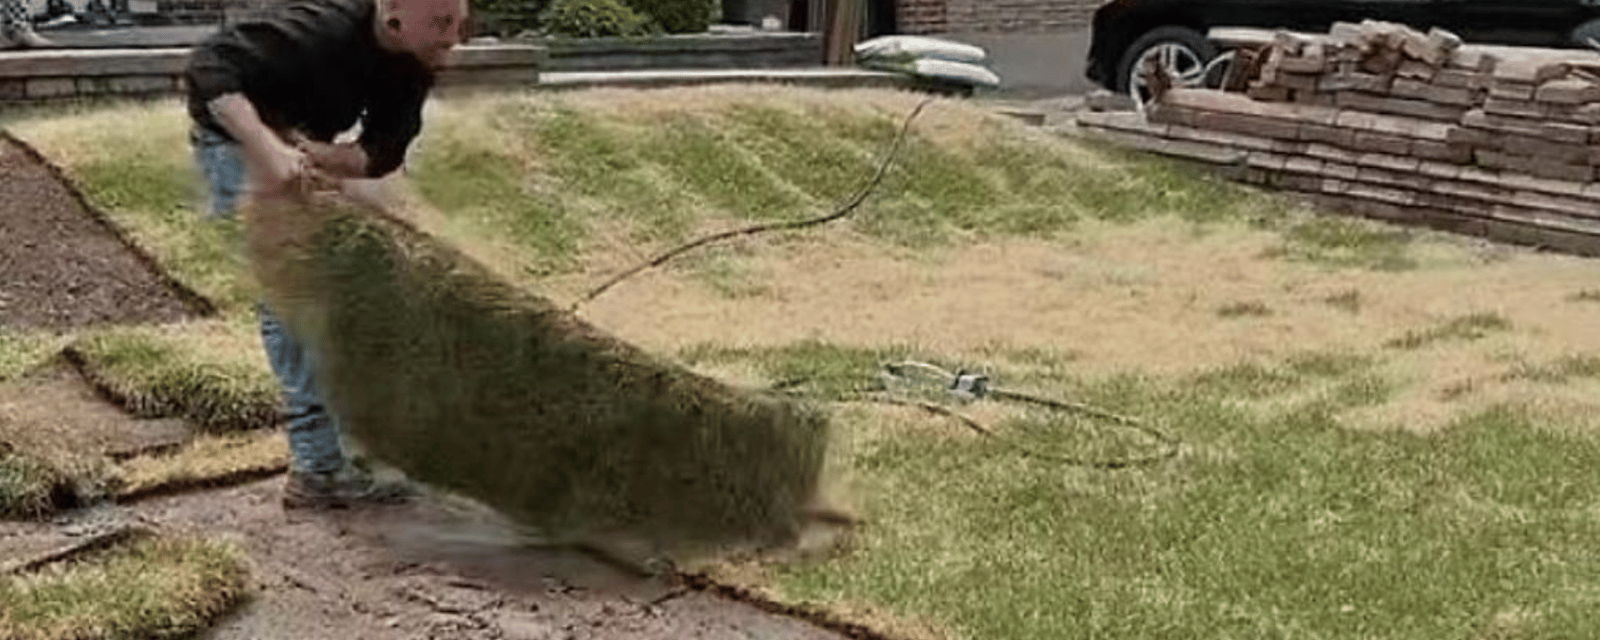 Une entreprise arrache la pelouse qu'elle venait d'installer car le client refuse de payer.